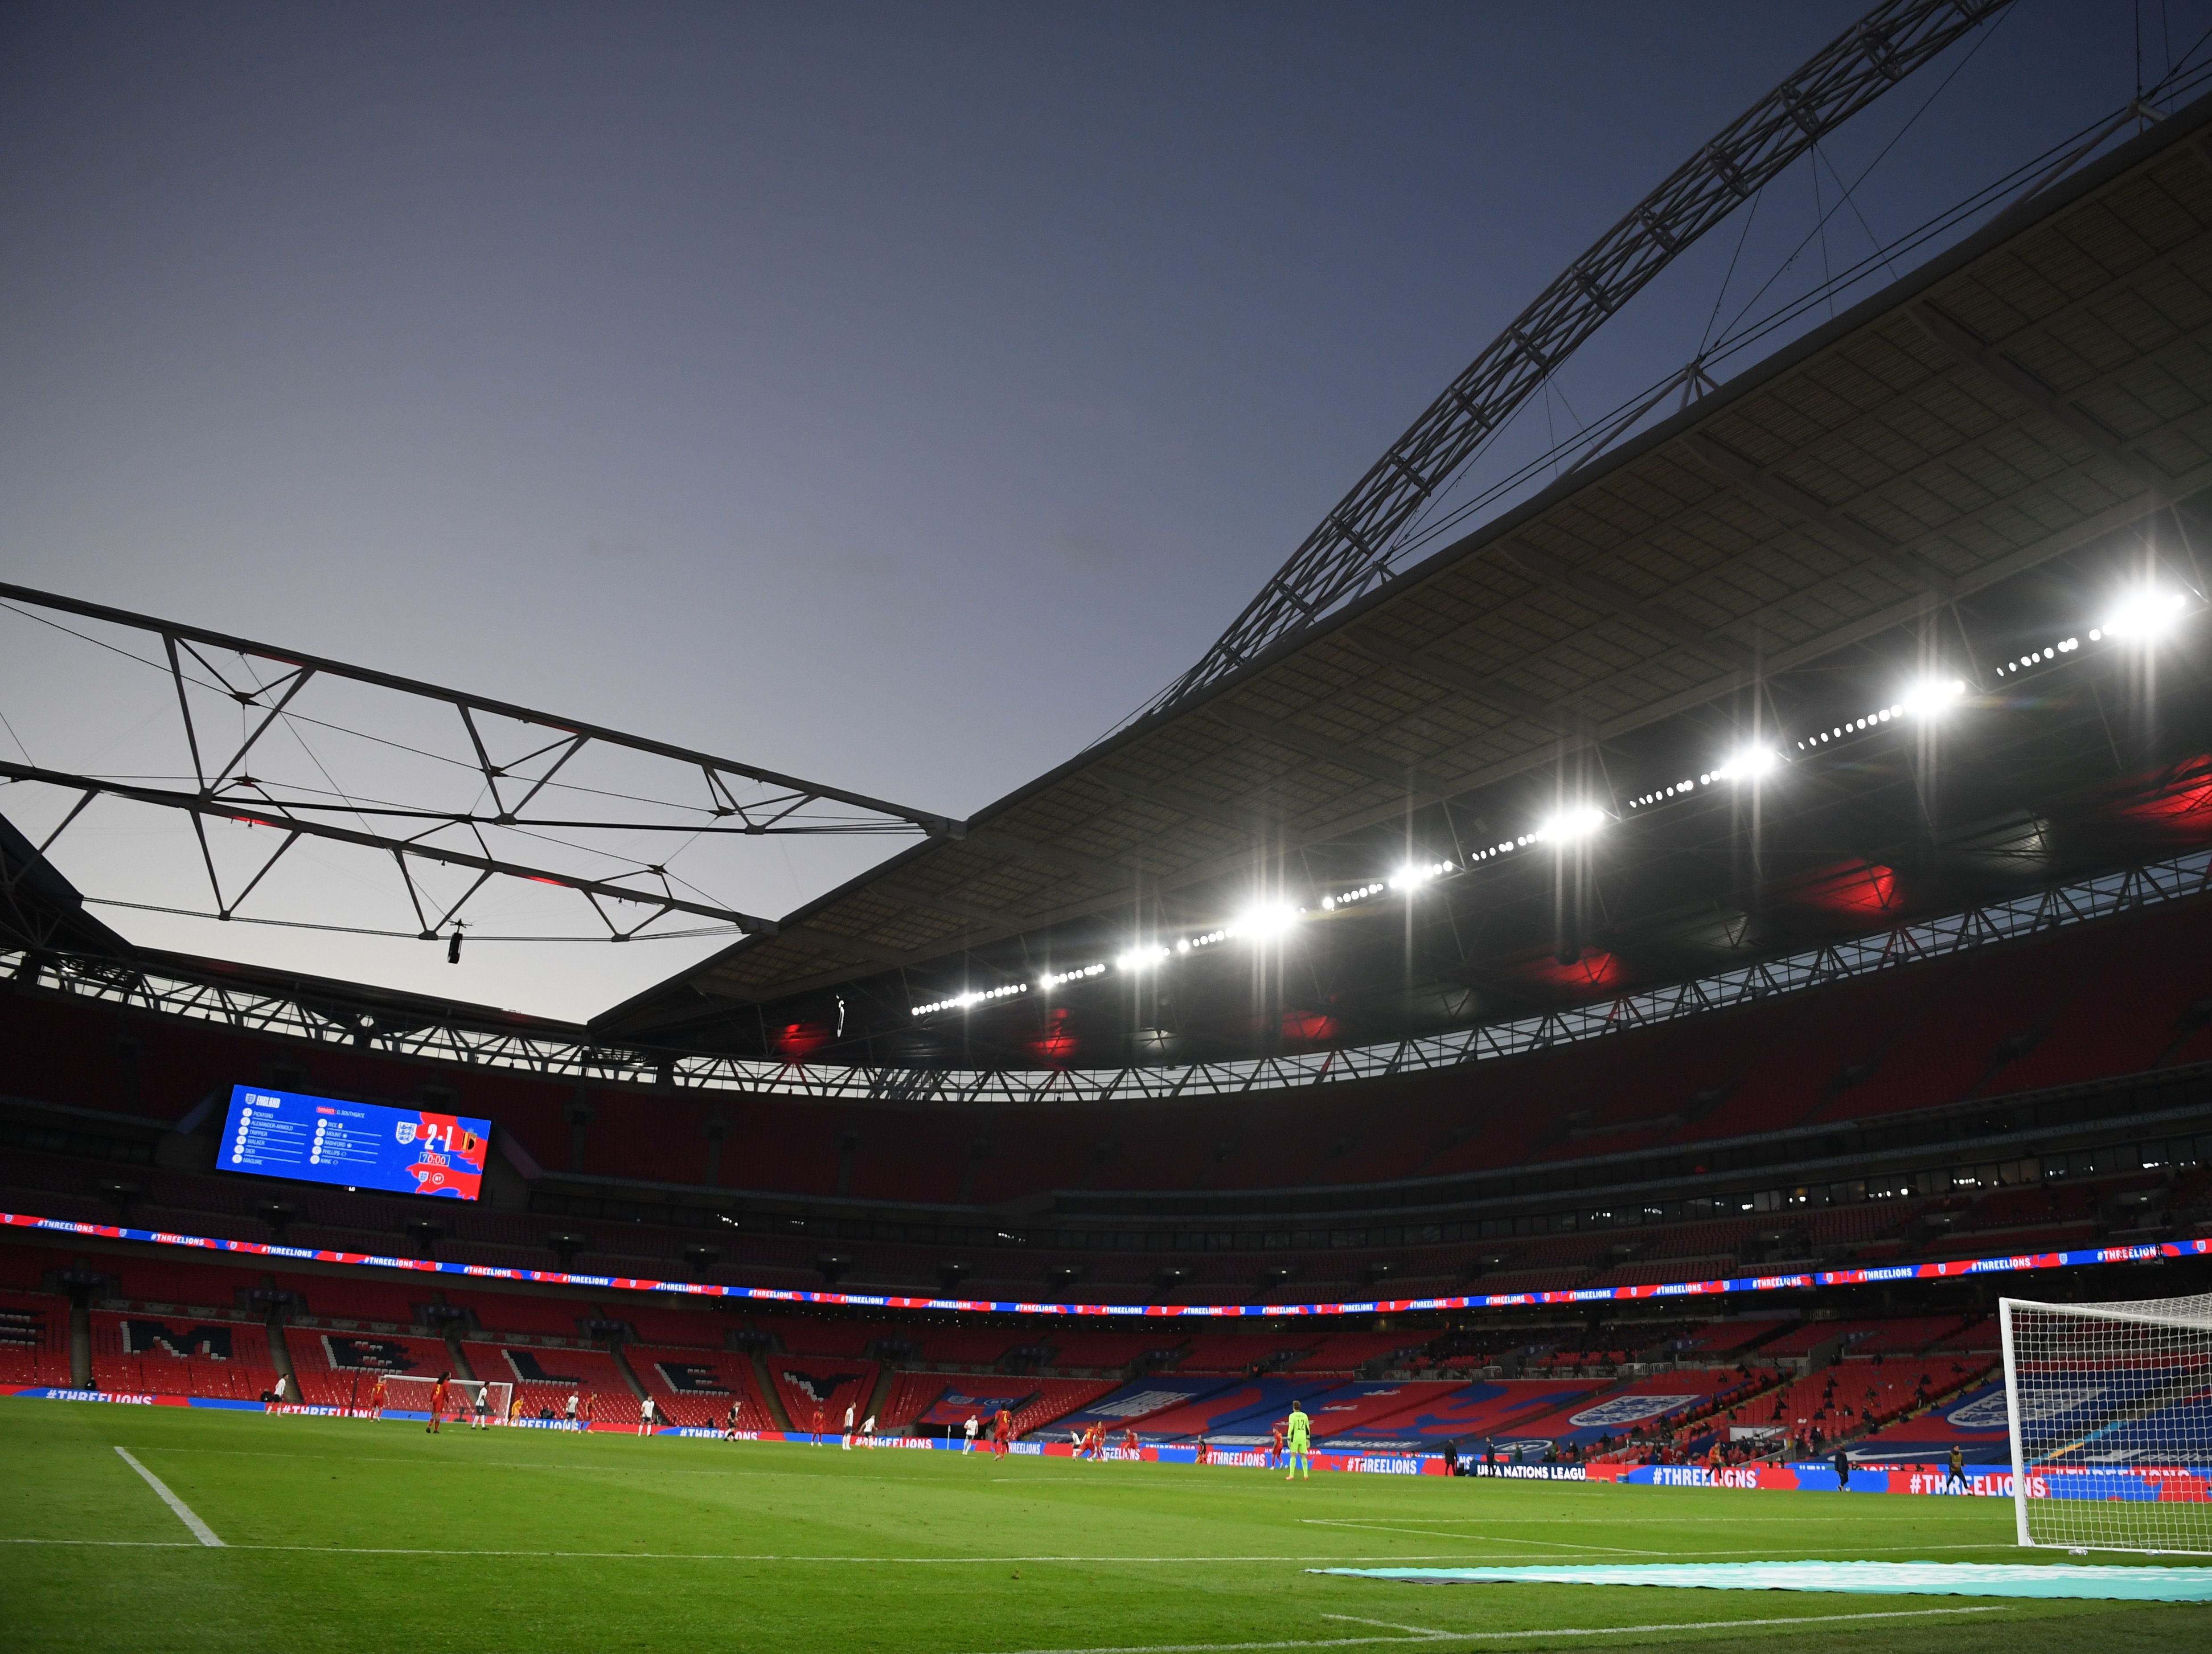 Game was set to take place at Wembley Stadium